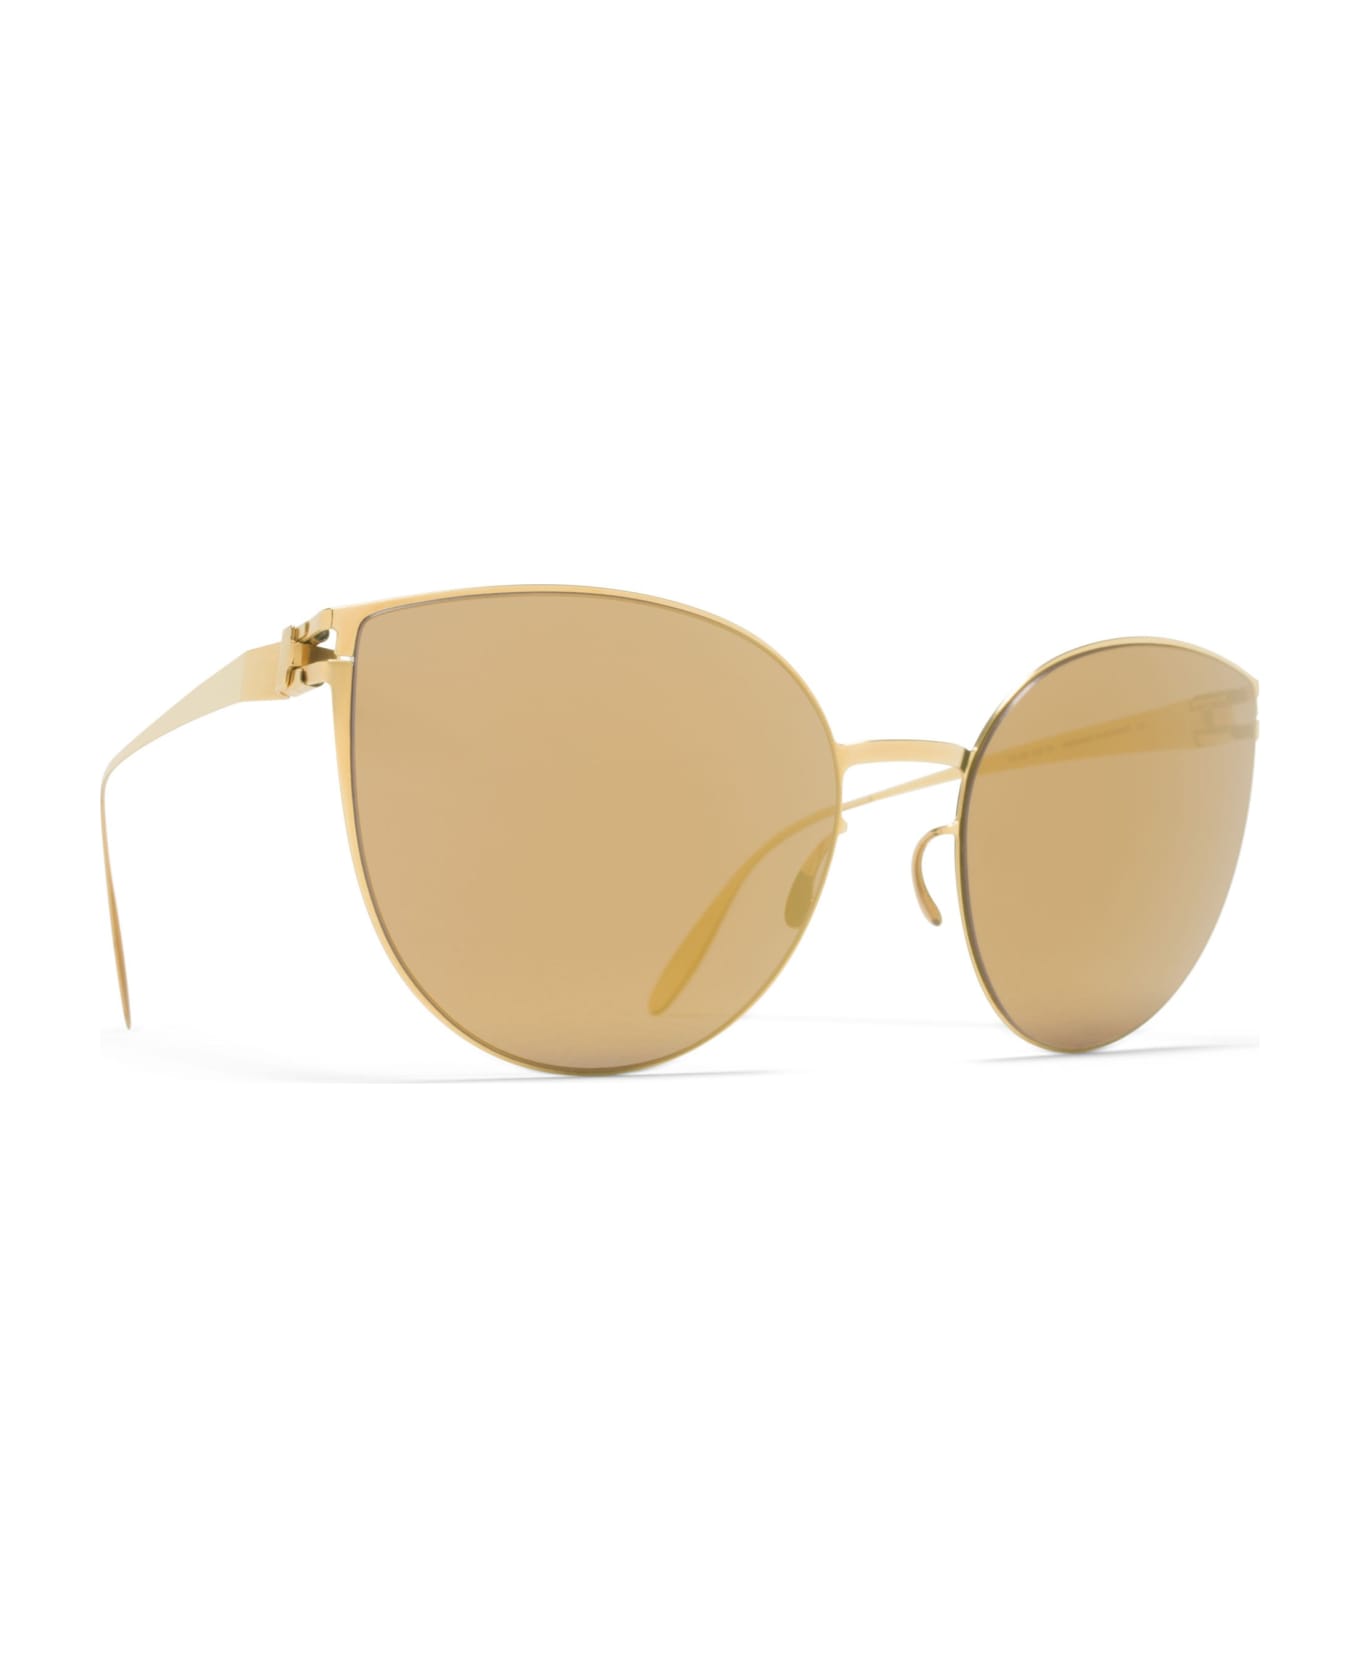 Mykita Sunglasses - Oro/Specchiato oro